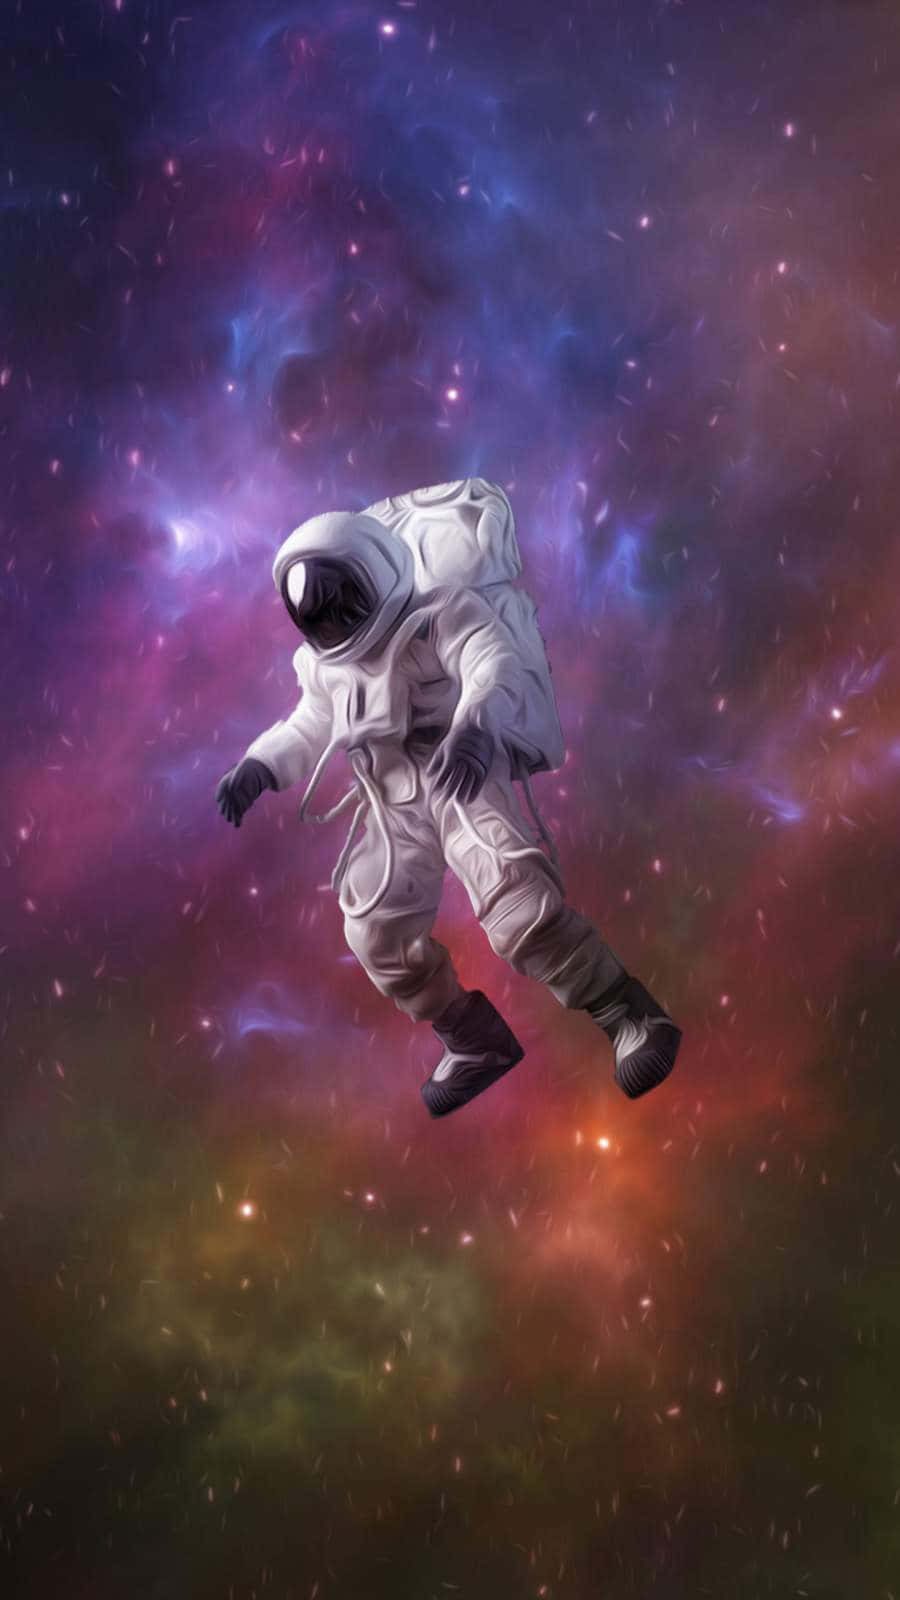 Bereitedich Auf Den Start Ins All Vor Mit Dem Astronauten Iphone. Wallpaper